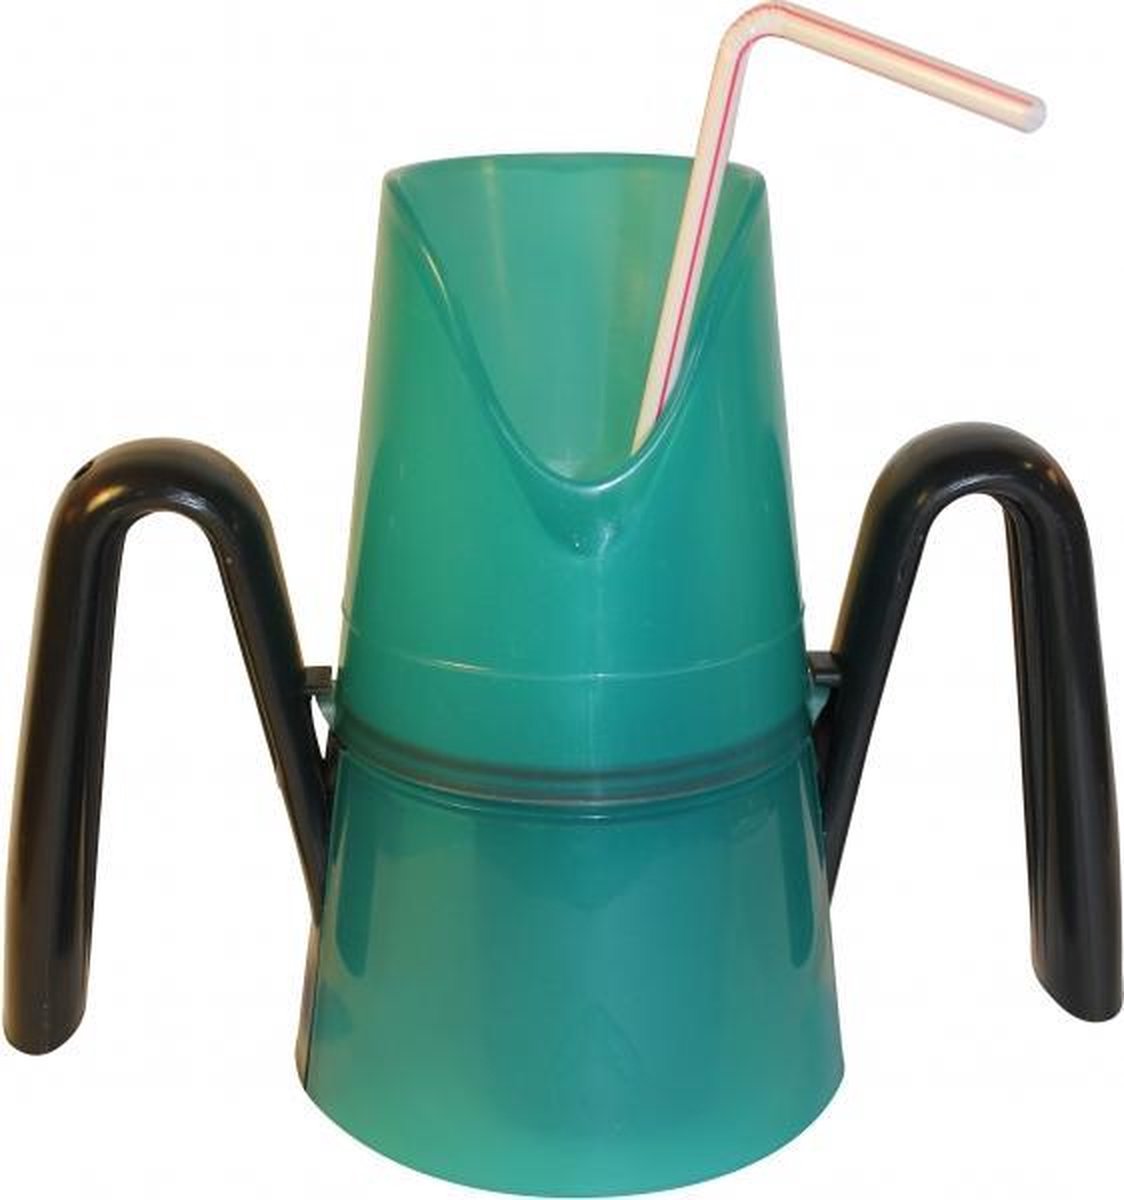 RiJe Cup - Aqua - Drinkbeker speciaal voor mensen met ernstige slikproblemen